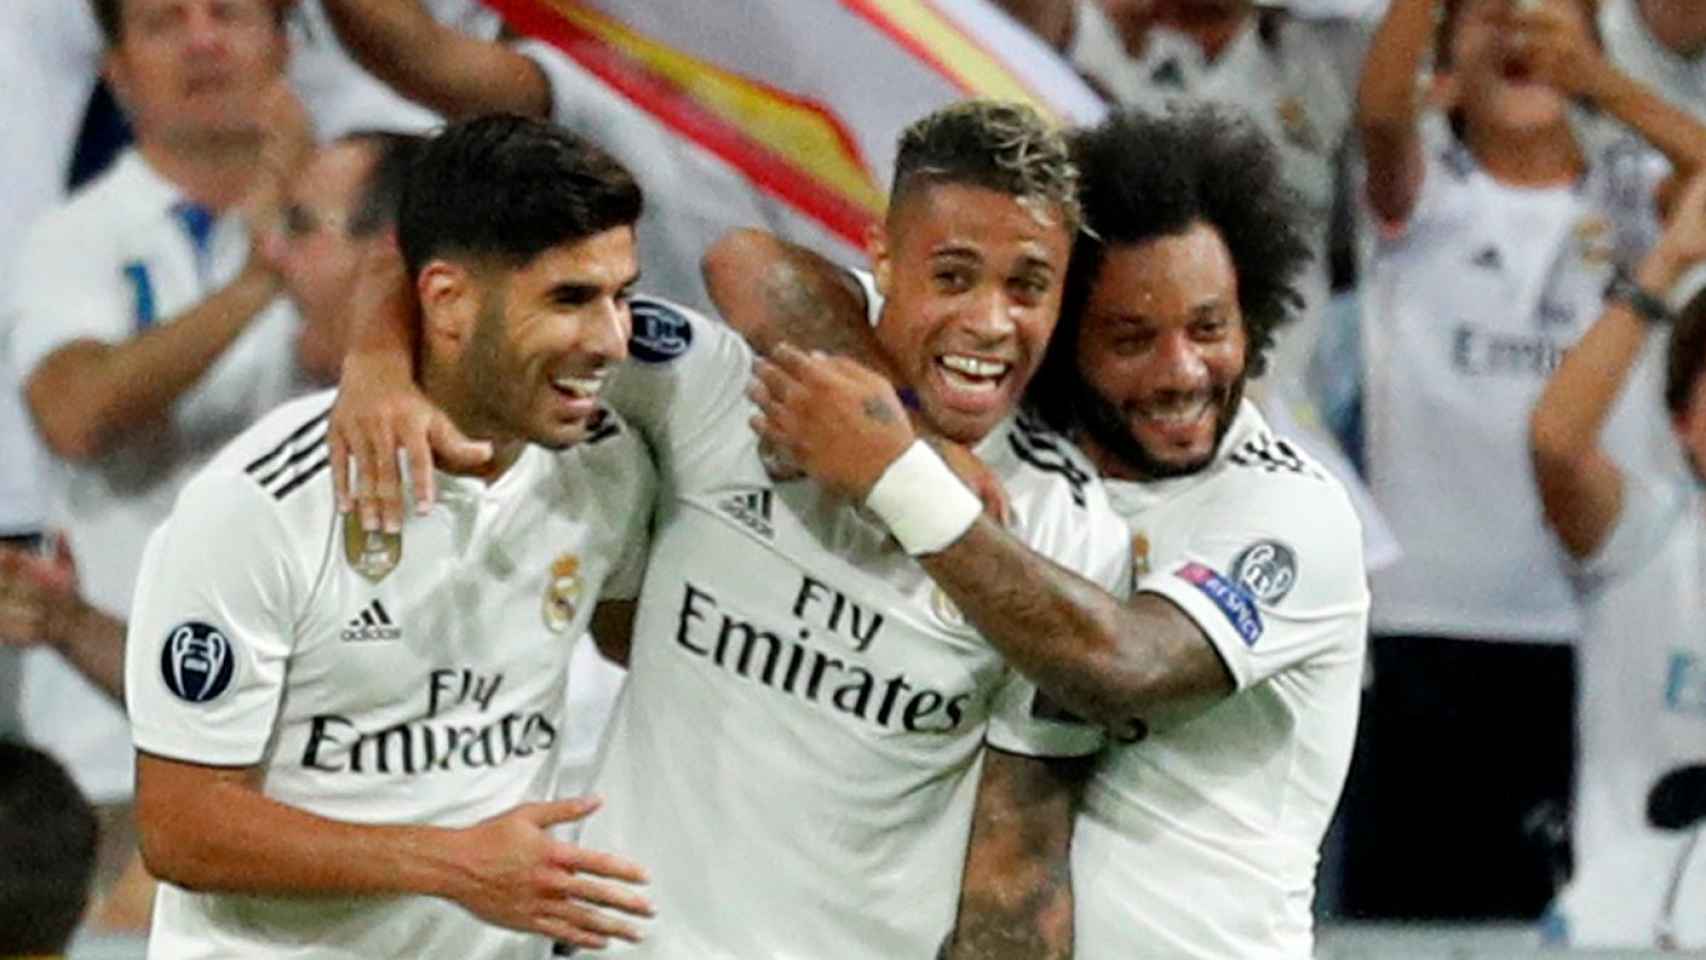 Asensio, Mariano y Marcelo celebran un gol en el Santiago Bernabéu